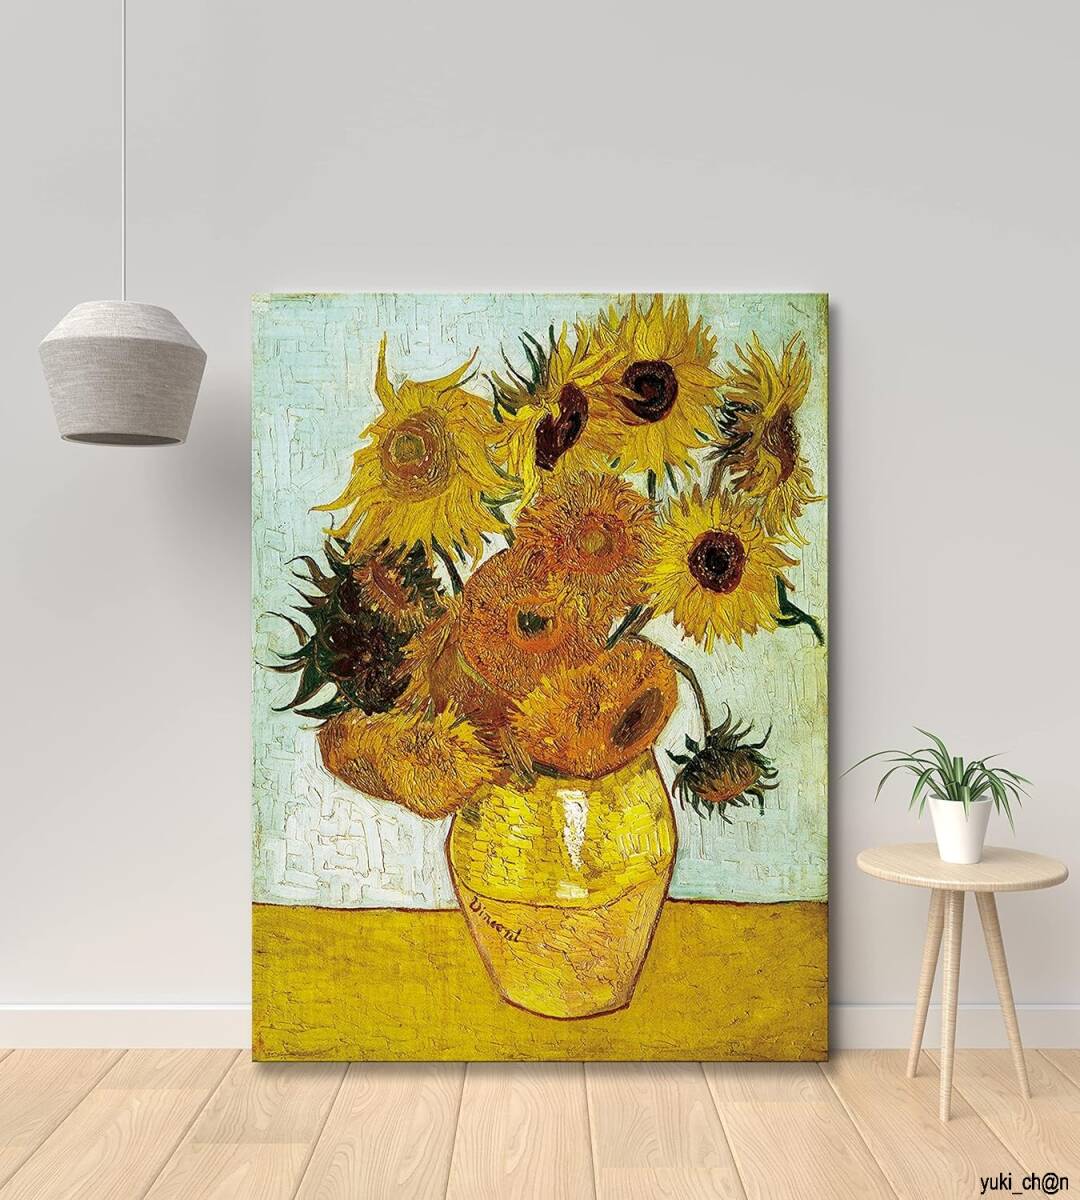 Kunsttafelgemälde Van Gogh Sonnenblumen Interieur Impressionistisches Ölgemälde Wanddekoration Wandbehang Poster Wandgemälde Hintergrundgemälde Mit Holzrahmen 40X60Cm Reproduktion, Kunstwerk, Malerei, Andere